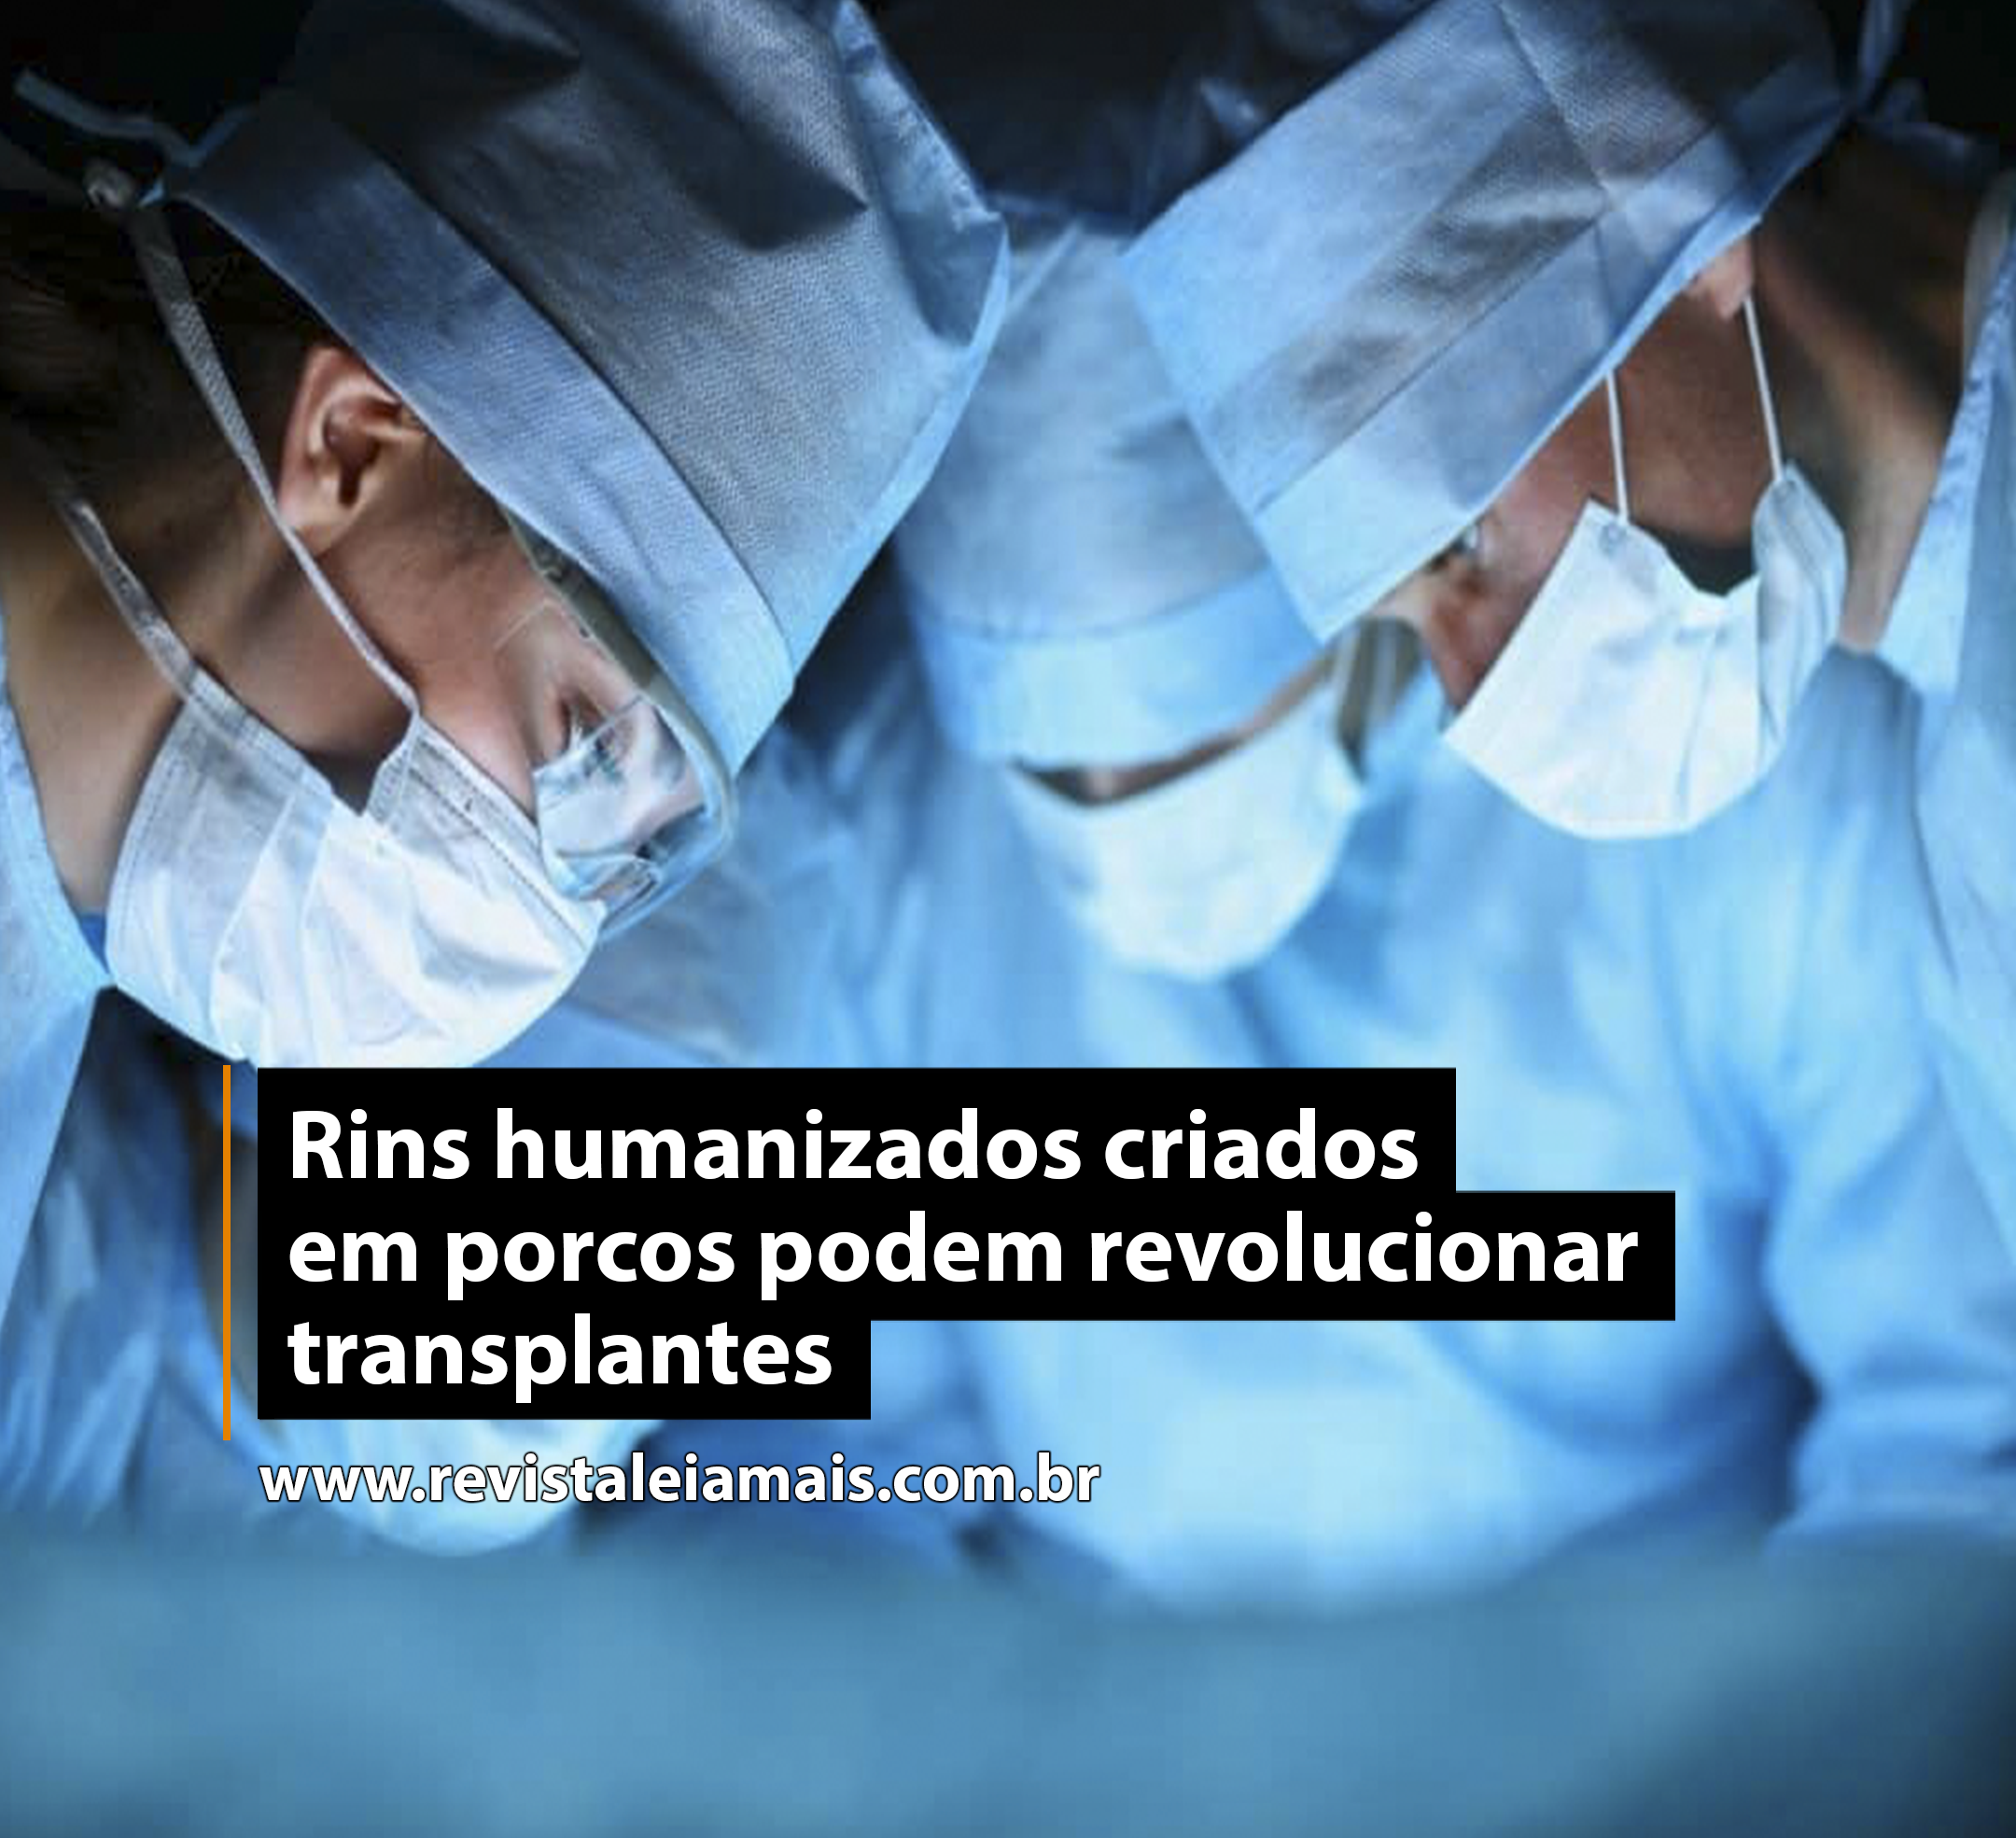 Rins humanizados criados em porcos podem revolucionar transplantes